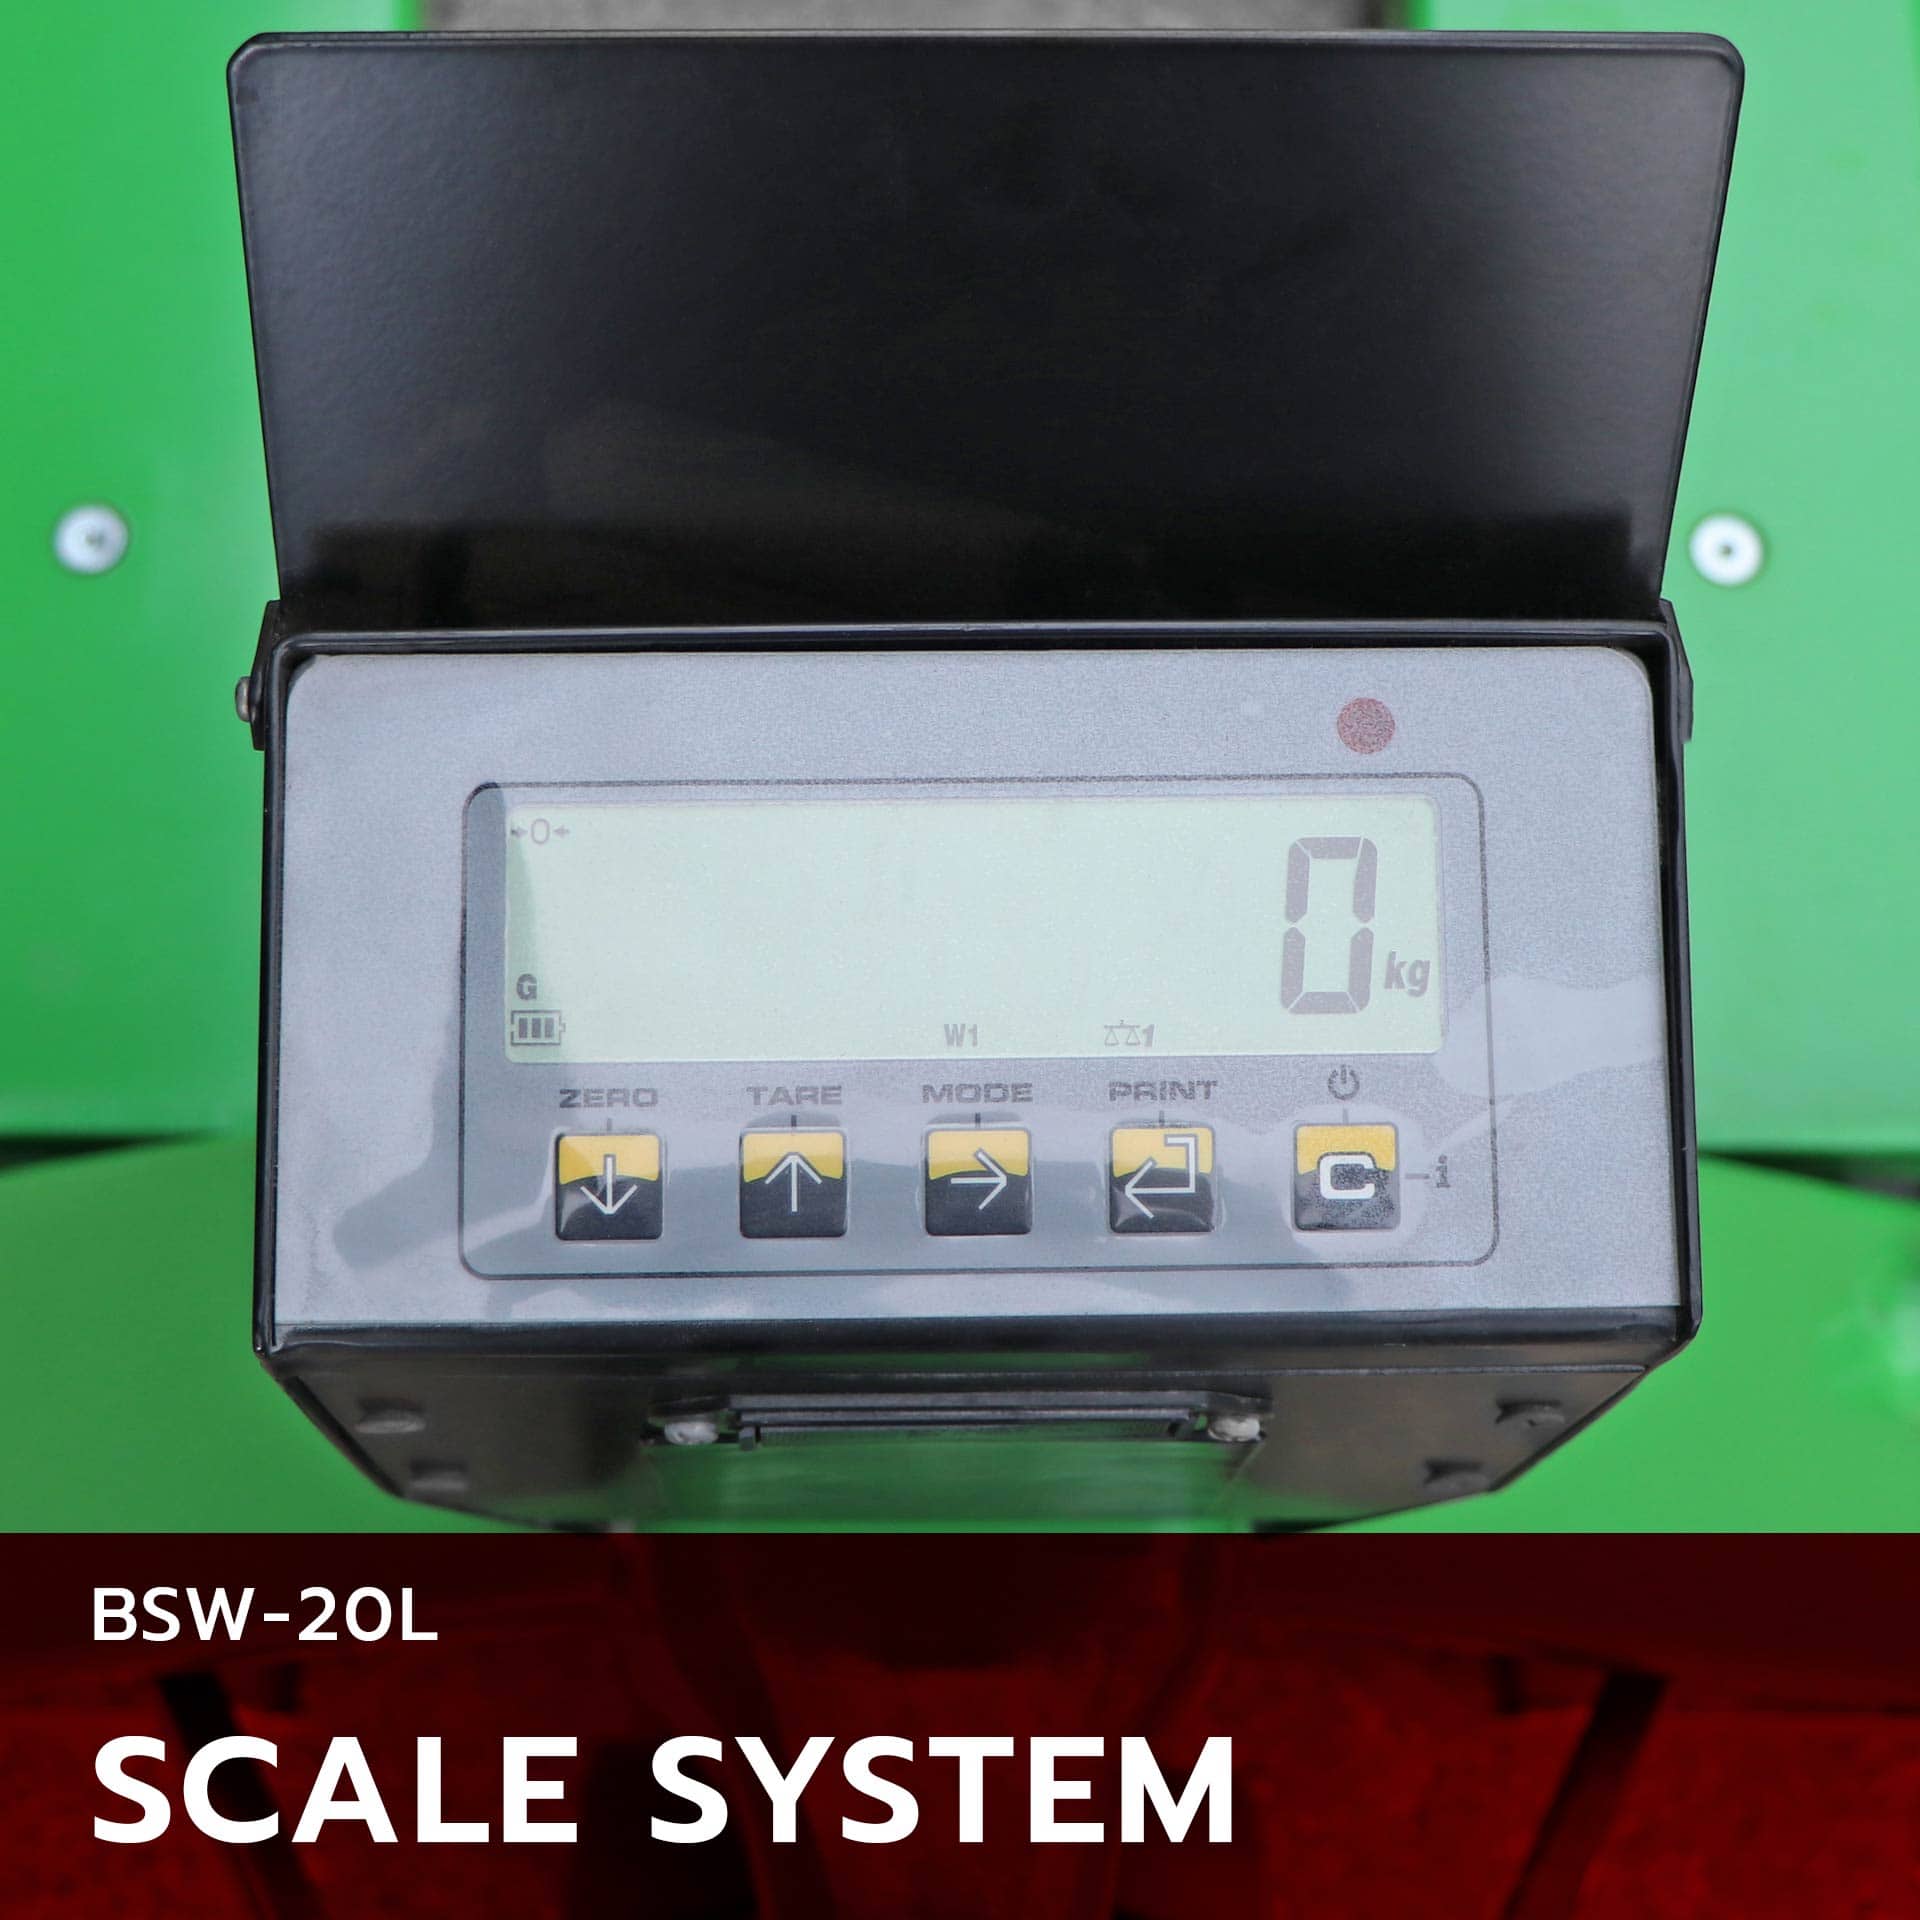 Scale system เครื่องชั่งพาเลทรุ่น bsw-20l